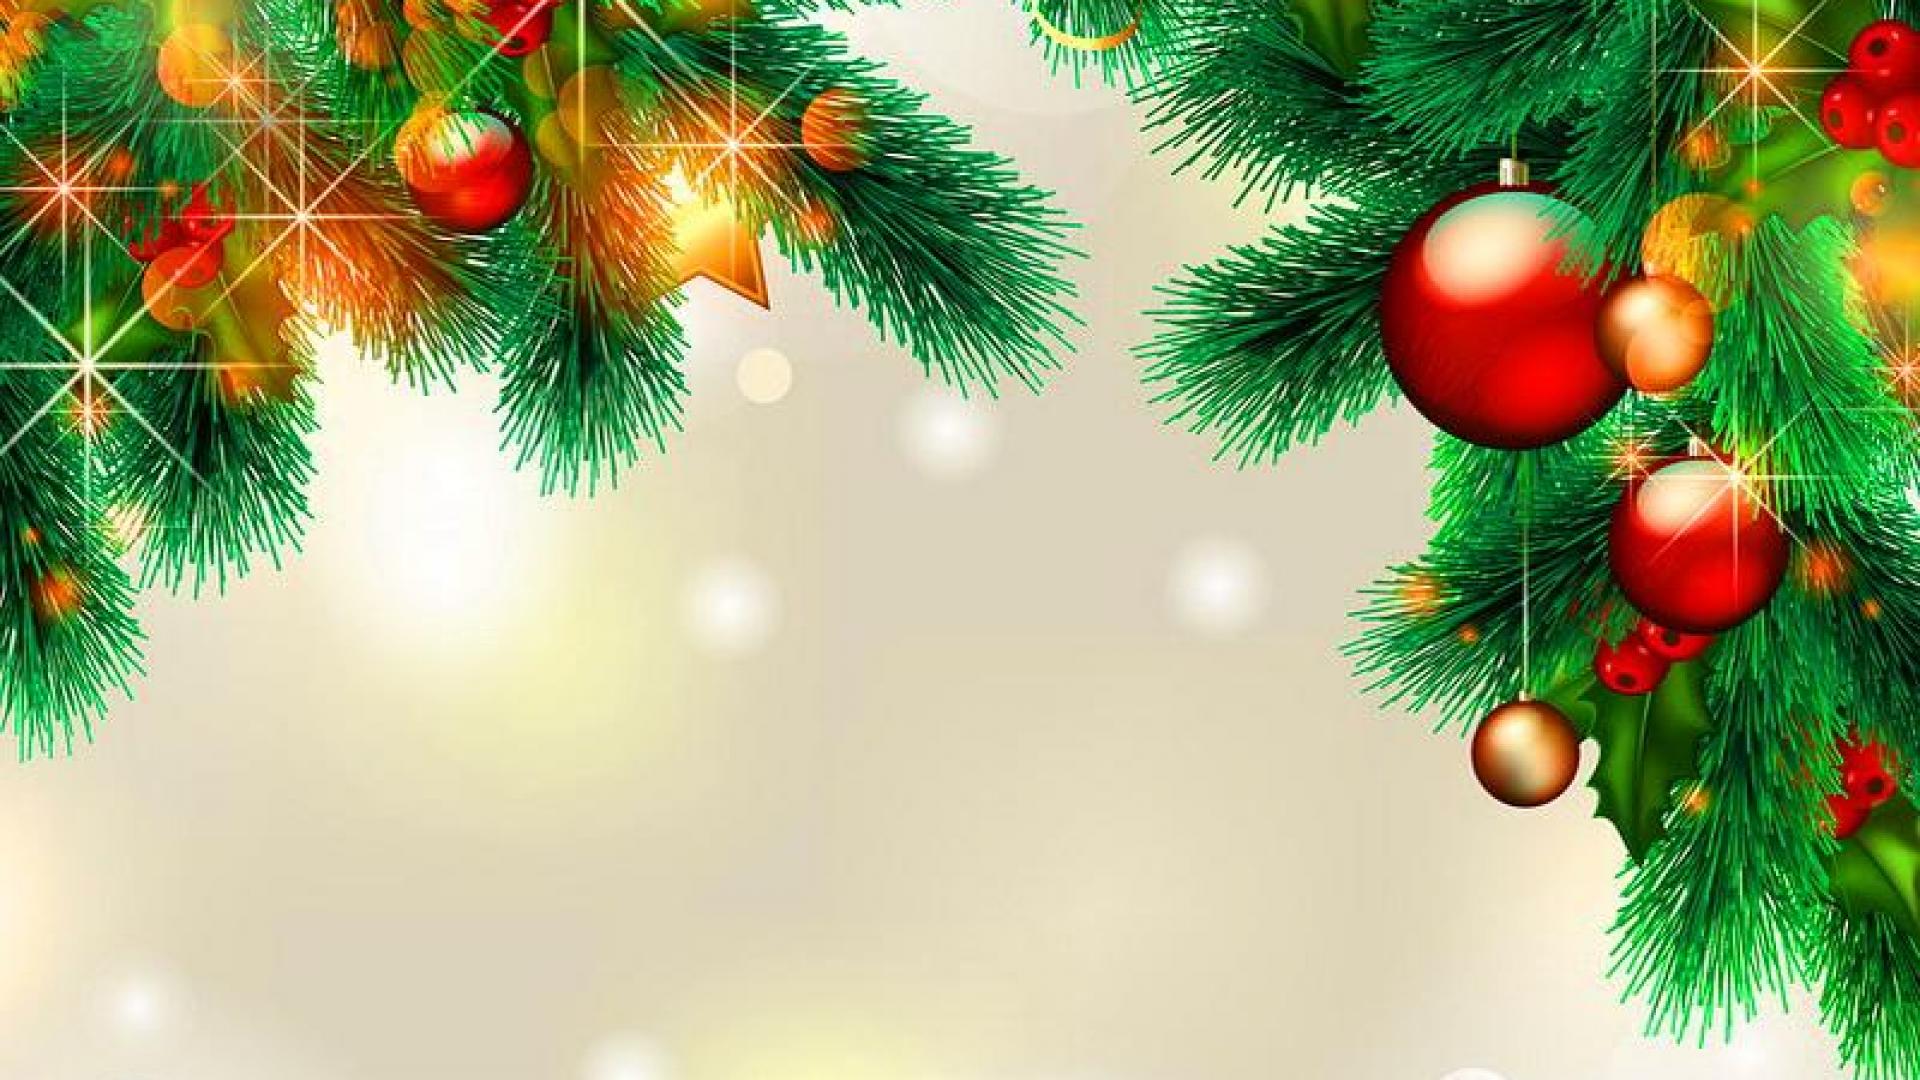 Hãy cùng đón mừng lễ hội Noel với phông nền Noel tuyệt đẹp và ấm áp không khí giáng sinh. Trang web của chúng tôi có sẵn hình ảnh phông nền Noel đa dạng để bạn có thể lựa chọn.